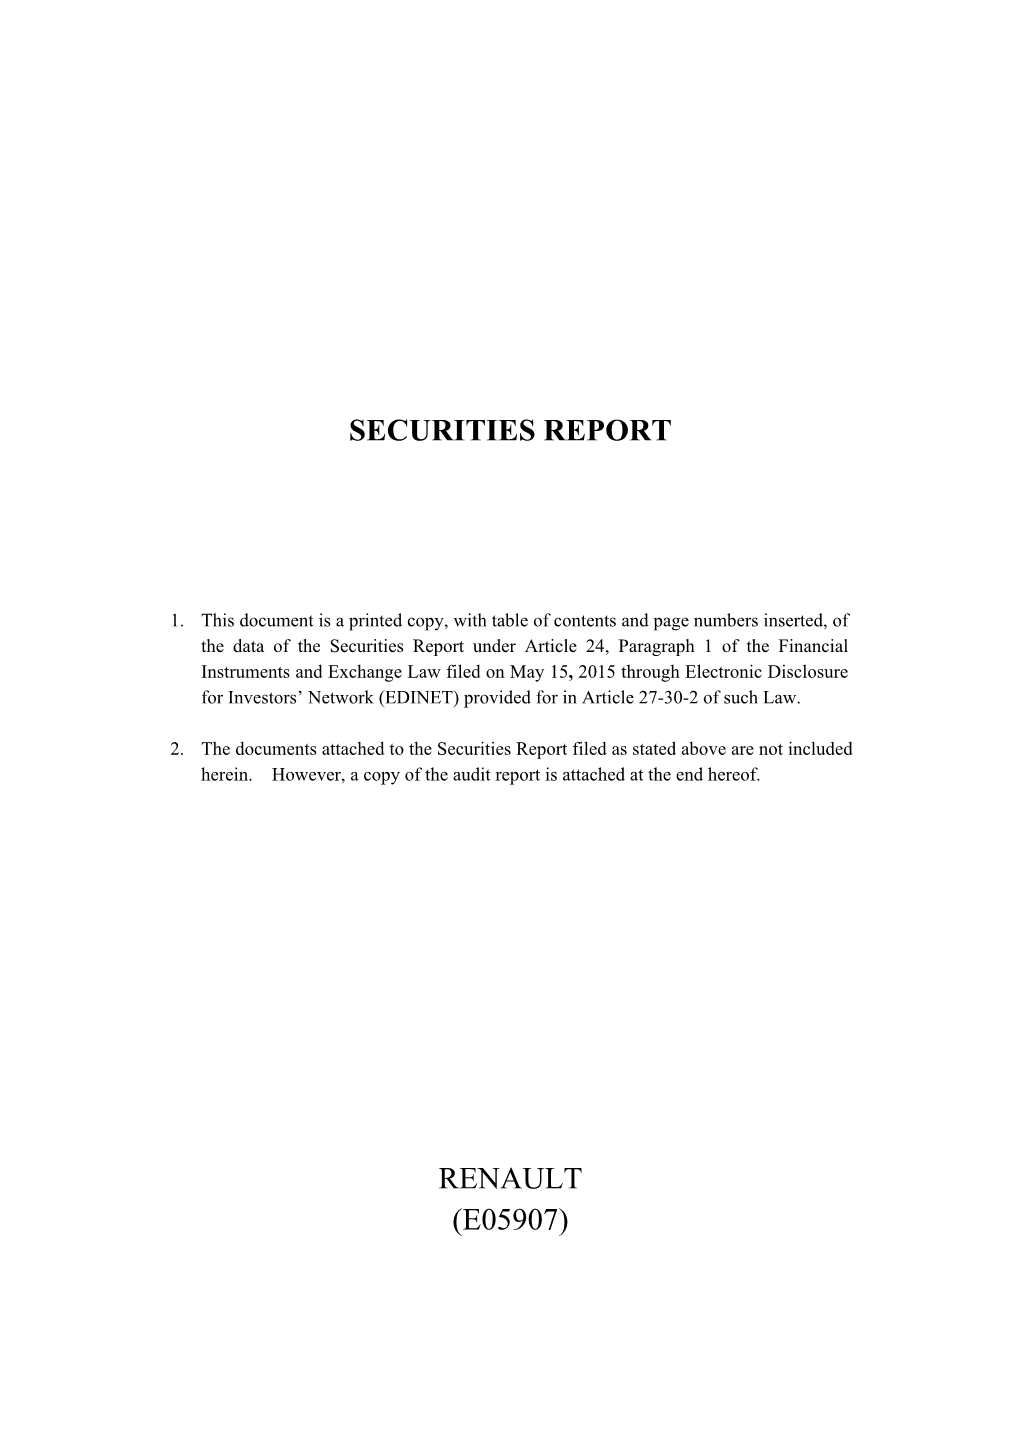 Securities Report Renault